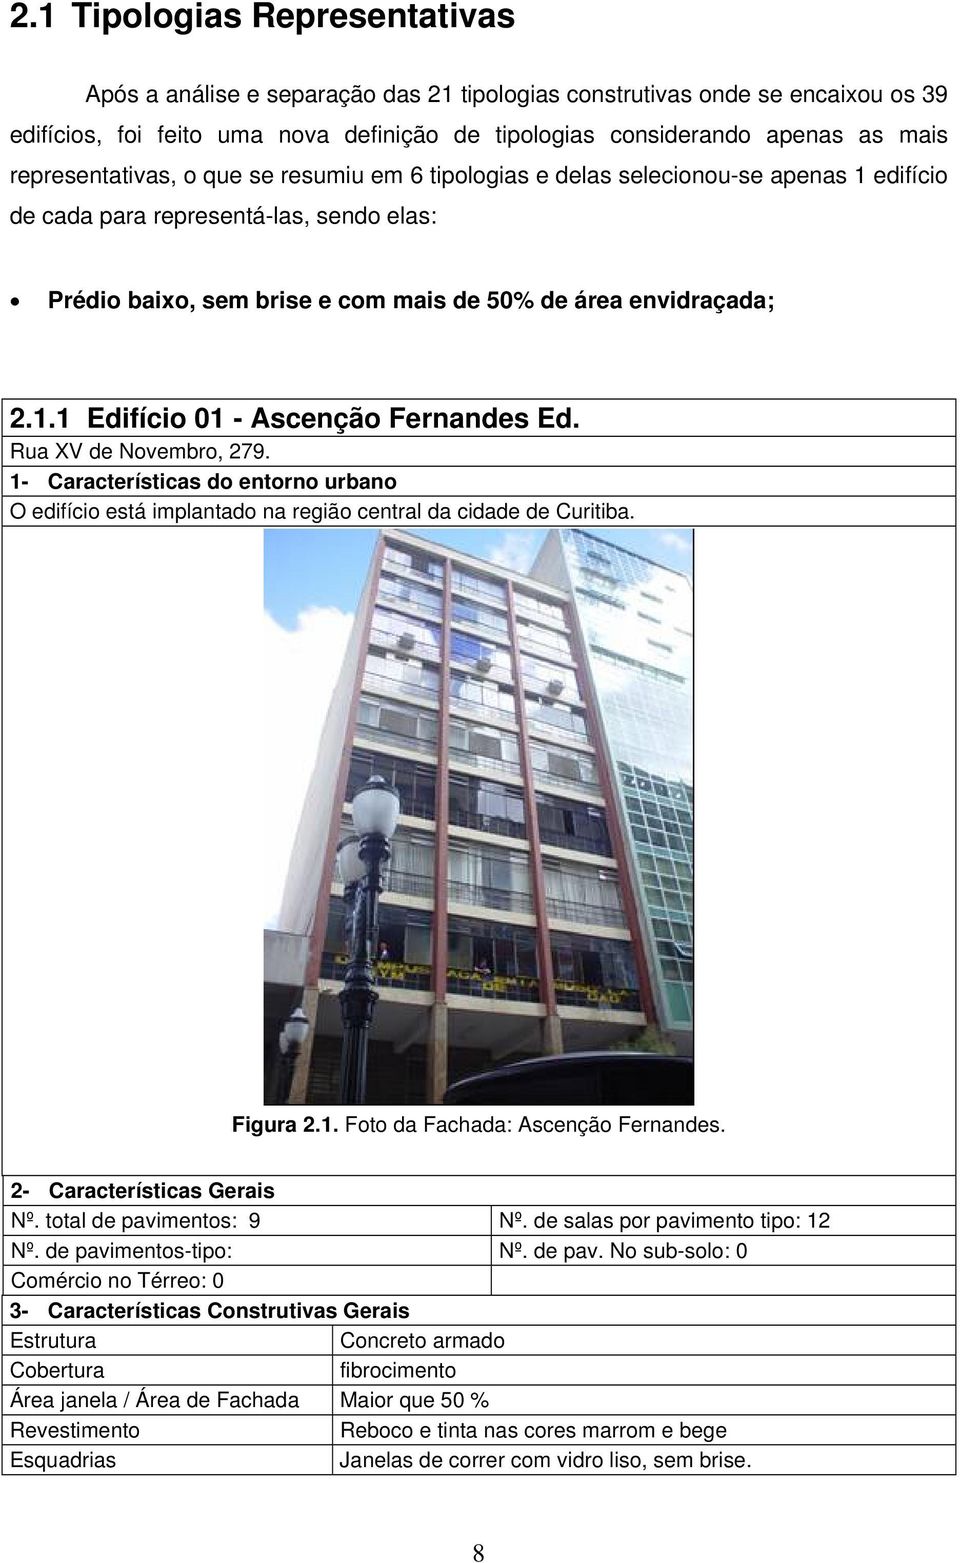 Rua XV de Novembro, 279. 1- Características do entorno urbano O edifício está implantado na região central da cidade de Curitiba. Figura 2.1. Foto da Fachada: Ascenção Fernandes.